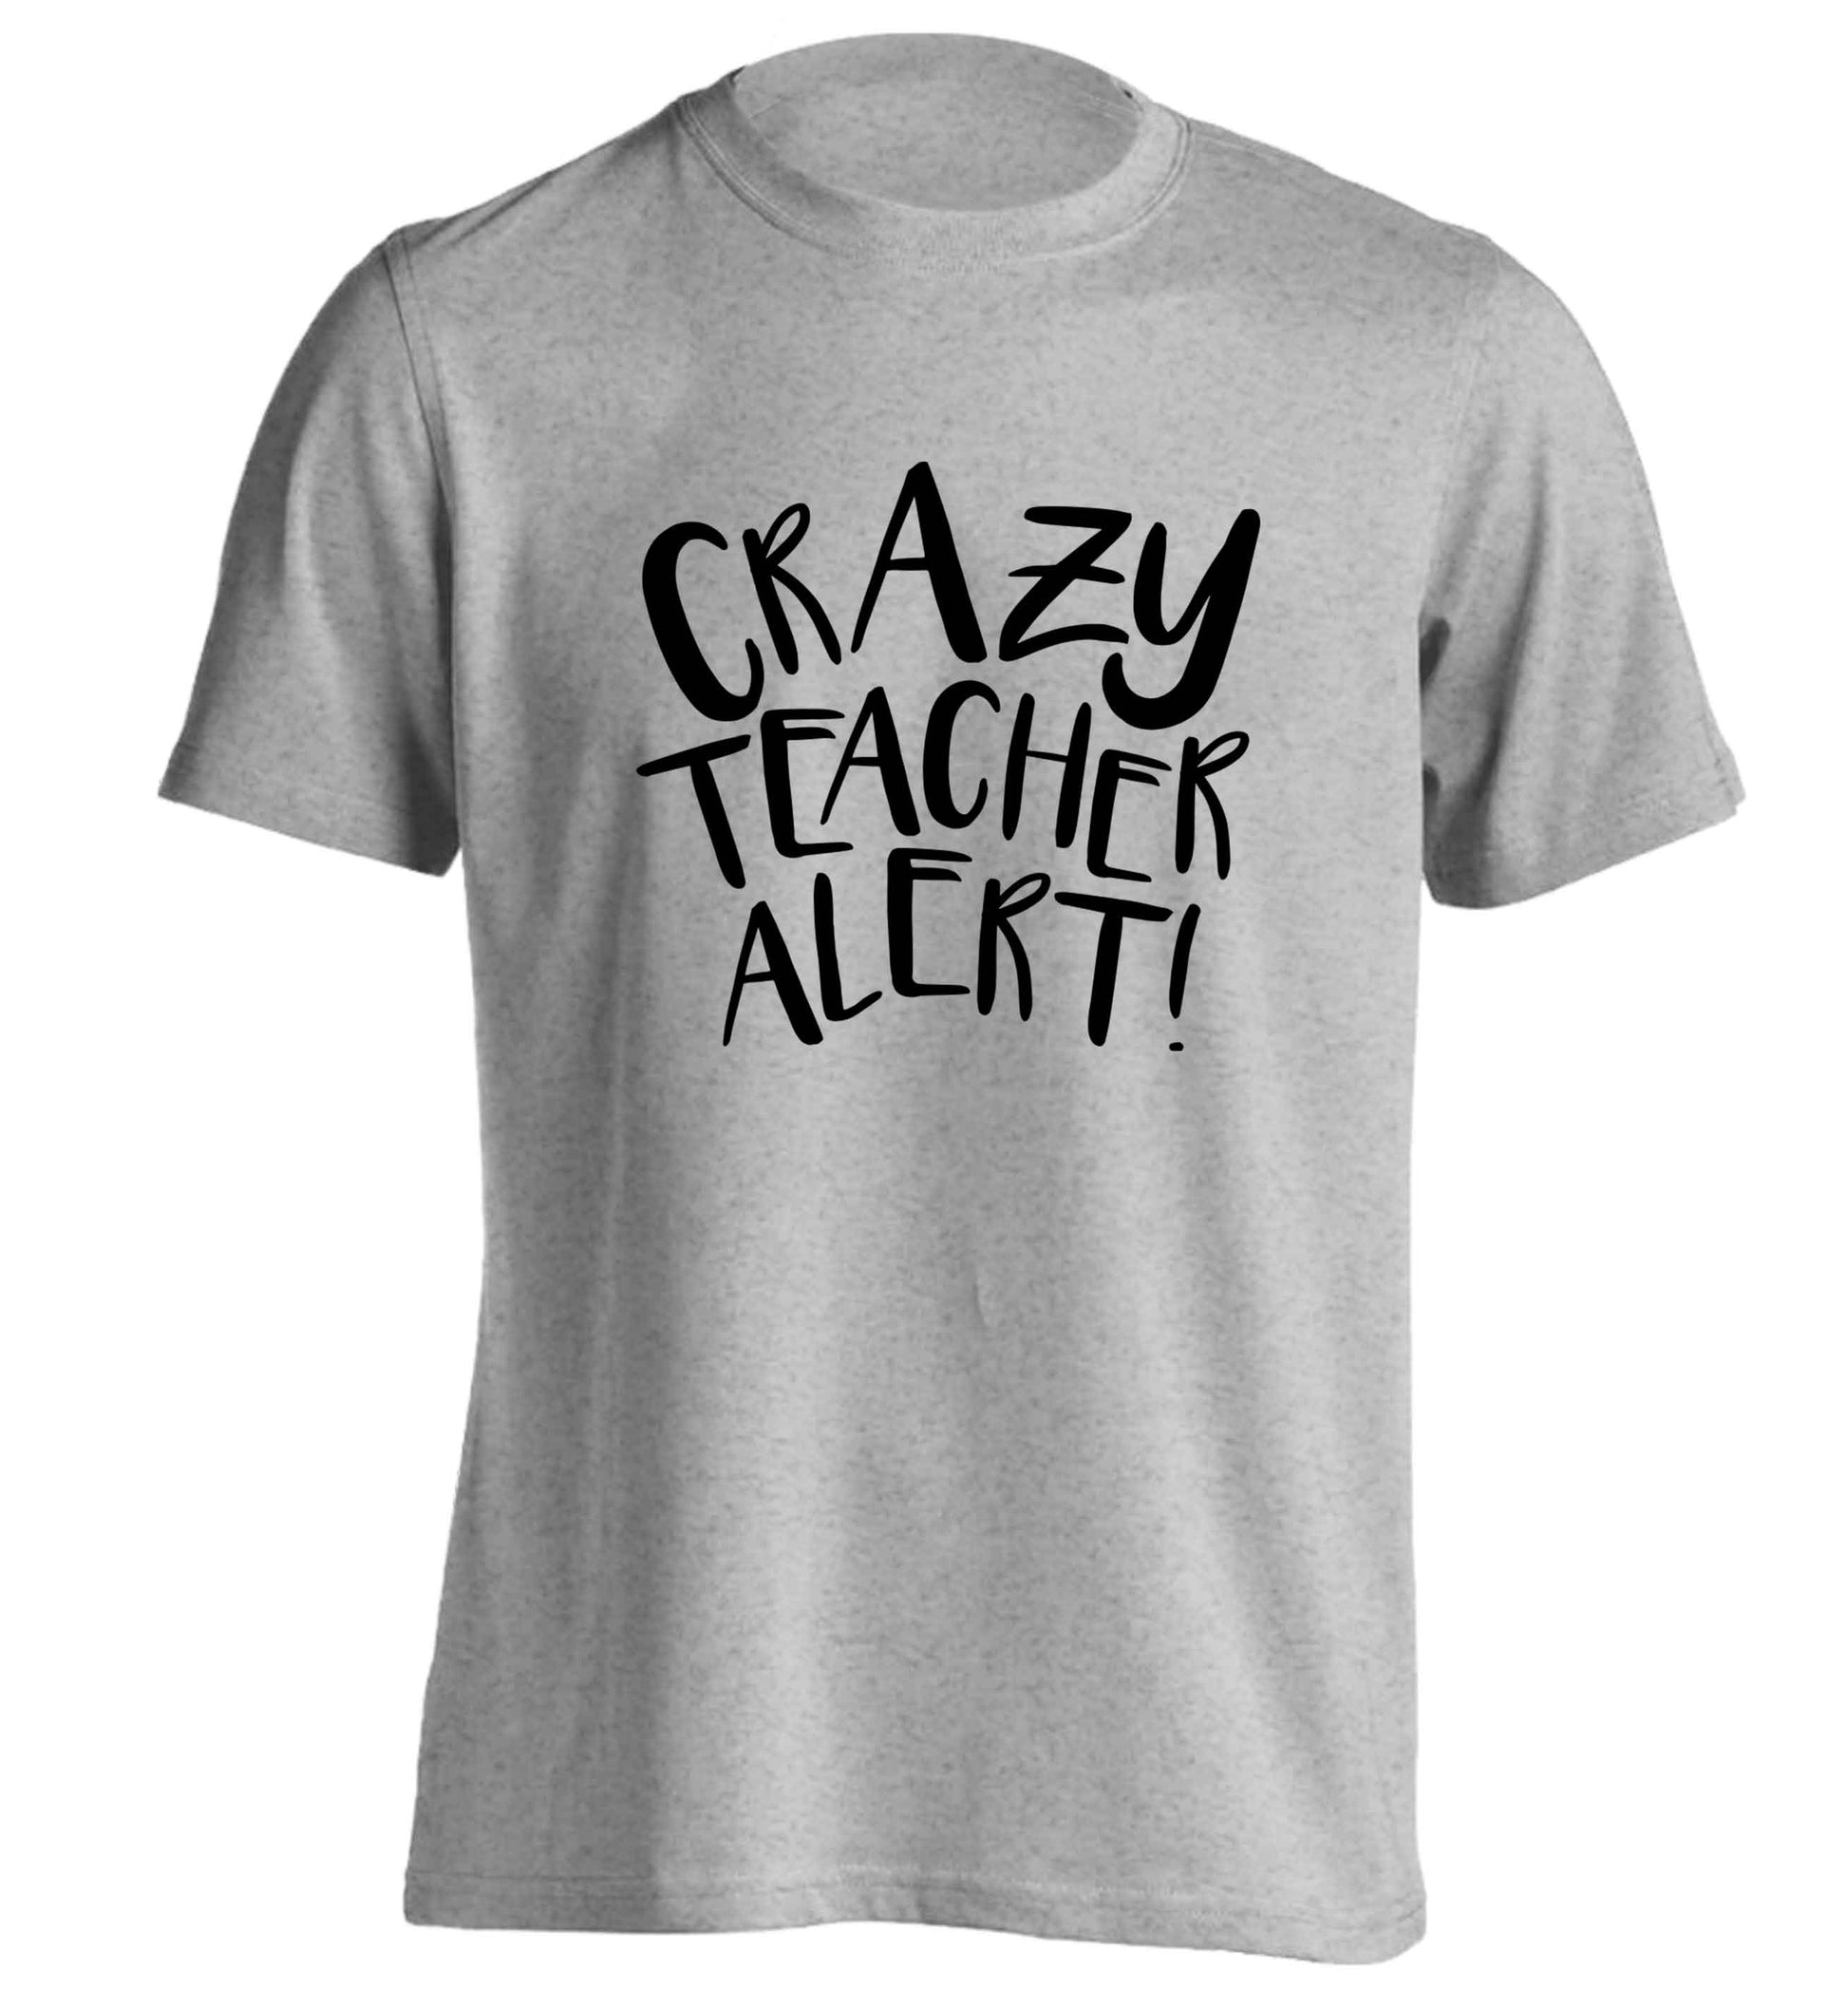 Crazy teacher alert adults unisex grey Tshirt 2XL